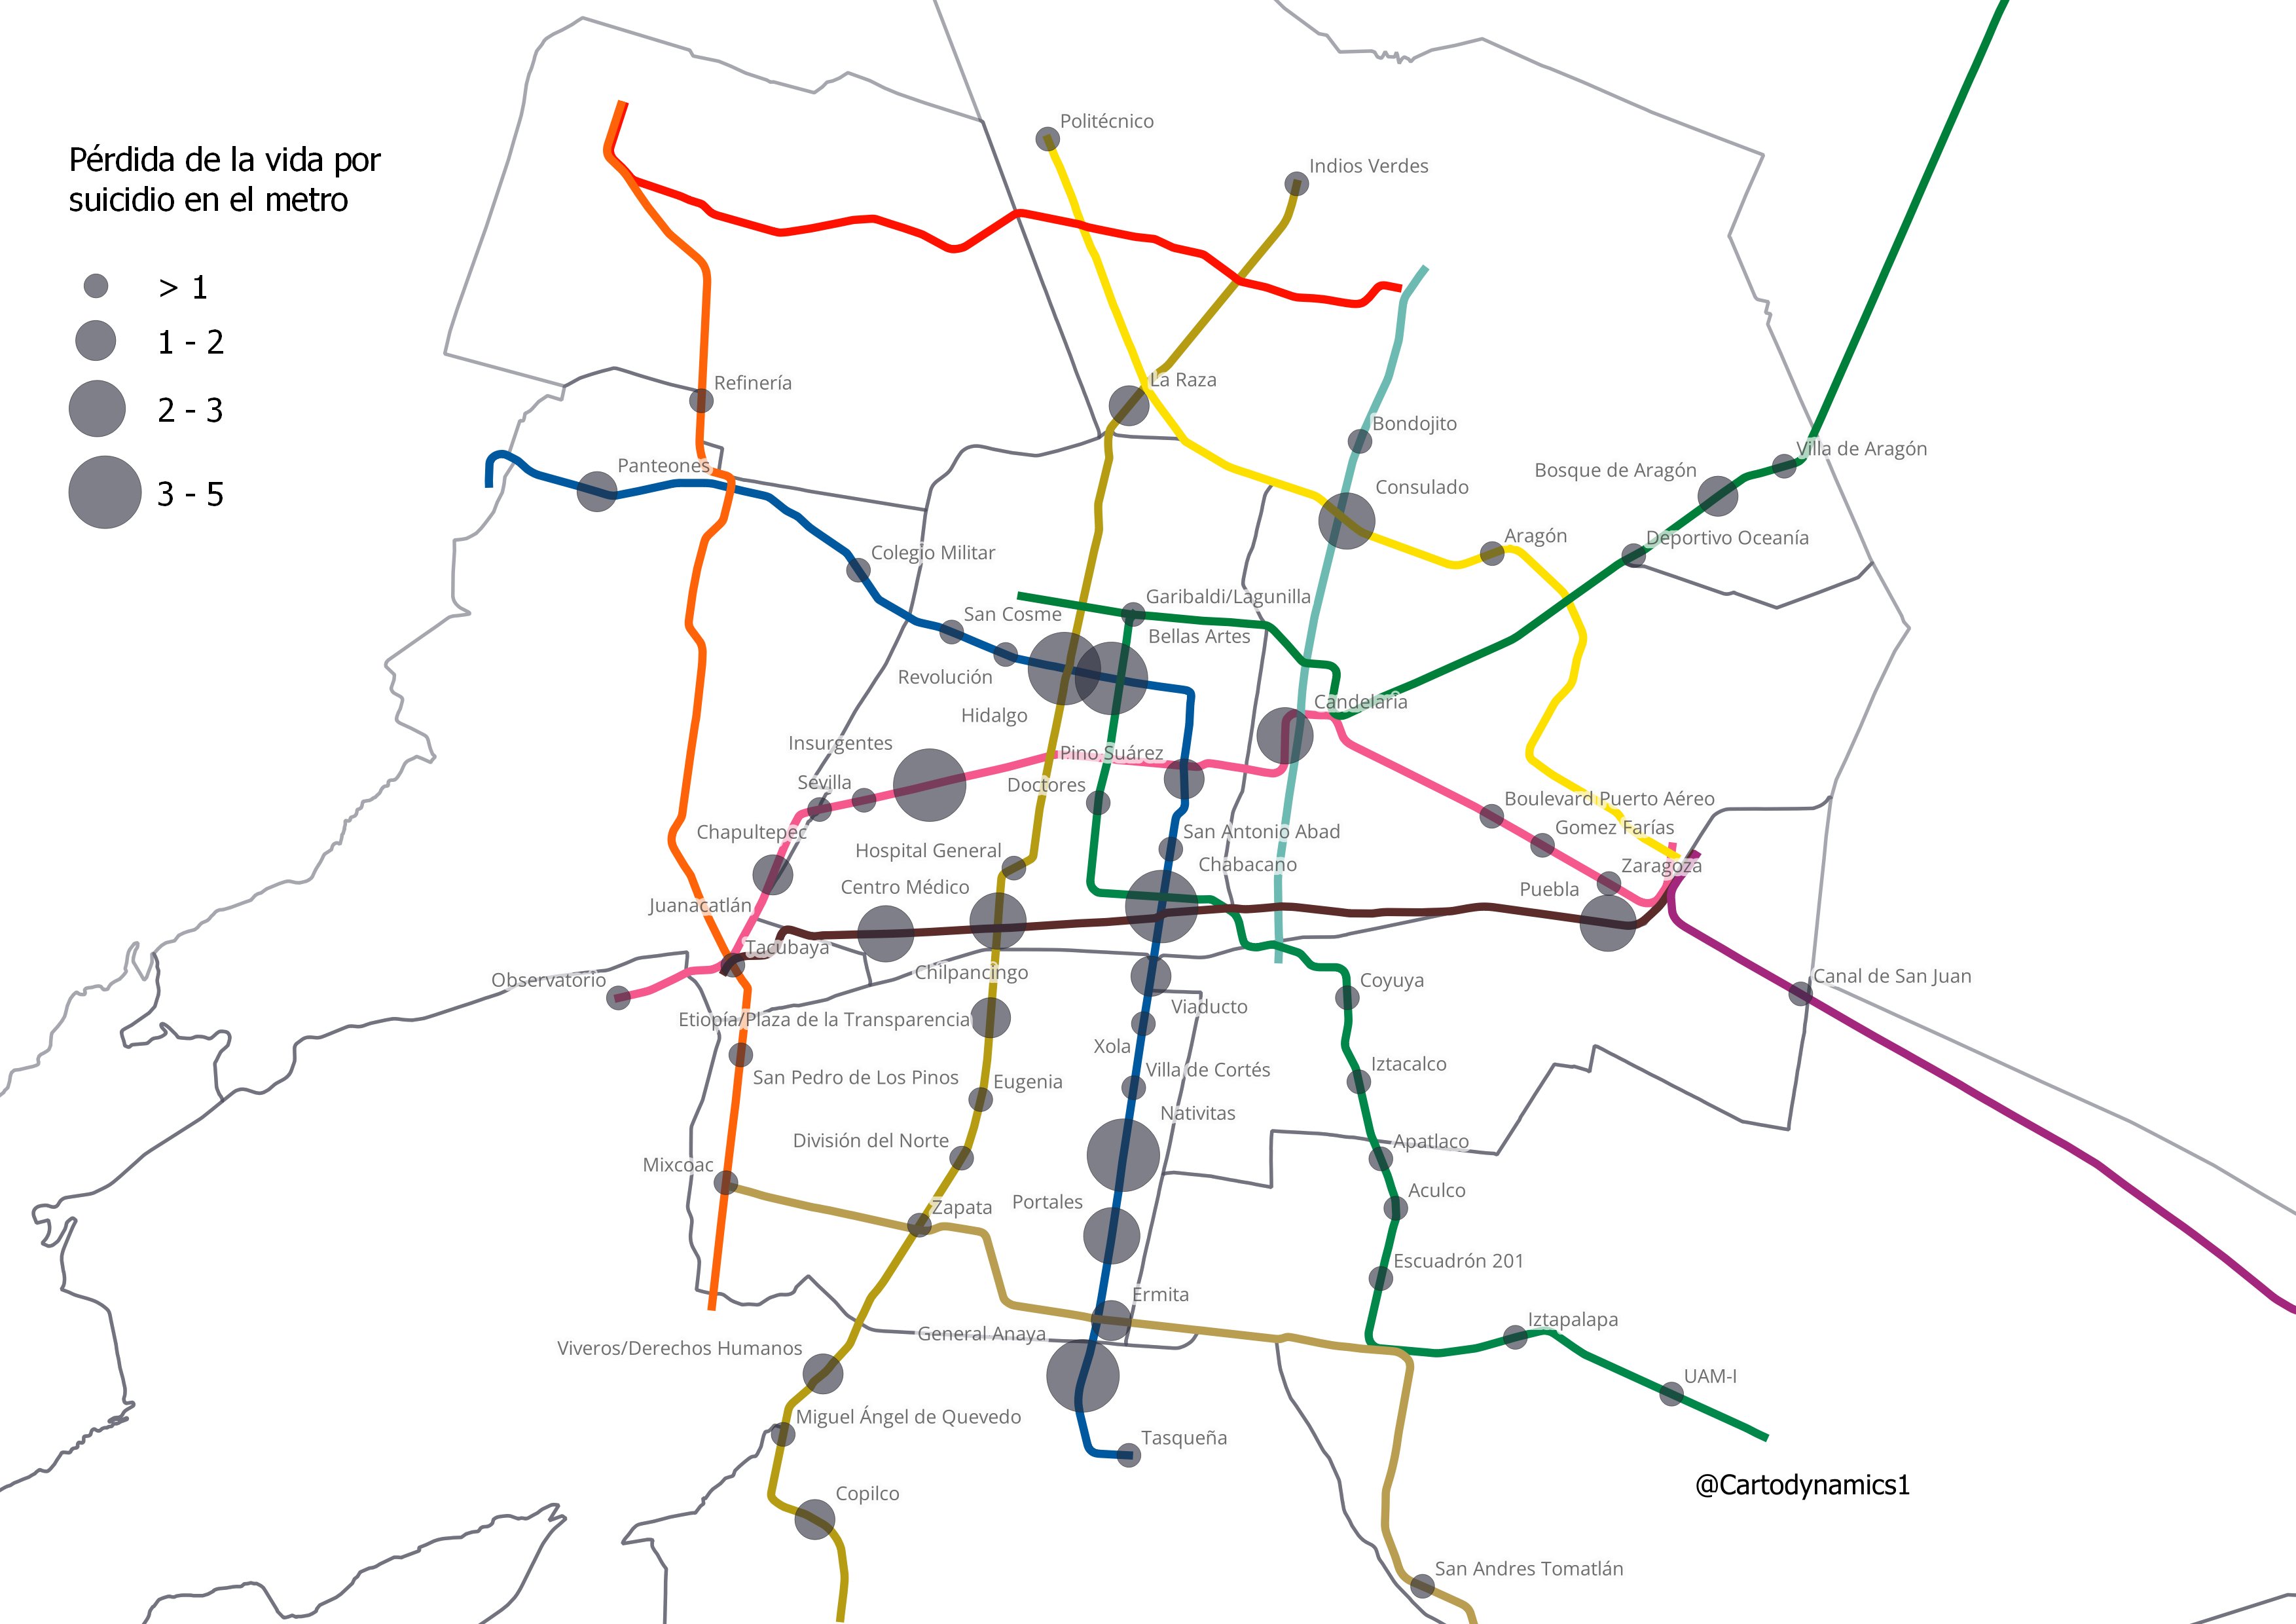 Mapa que muestra en qué estaciones del Metro de la CDMX se registran más suicidios. 
(@cartodynamics1)